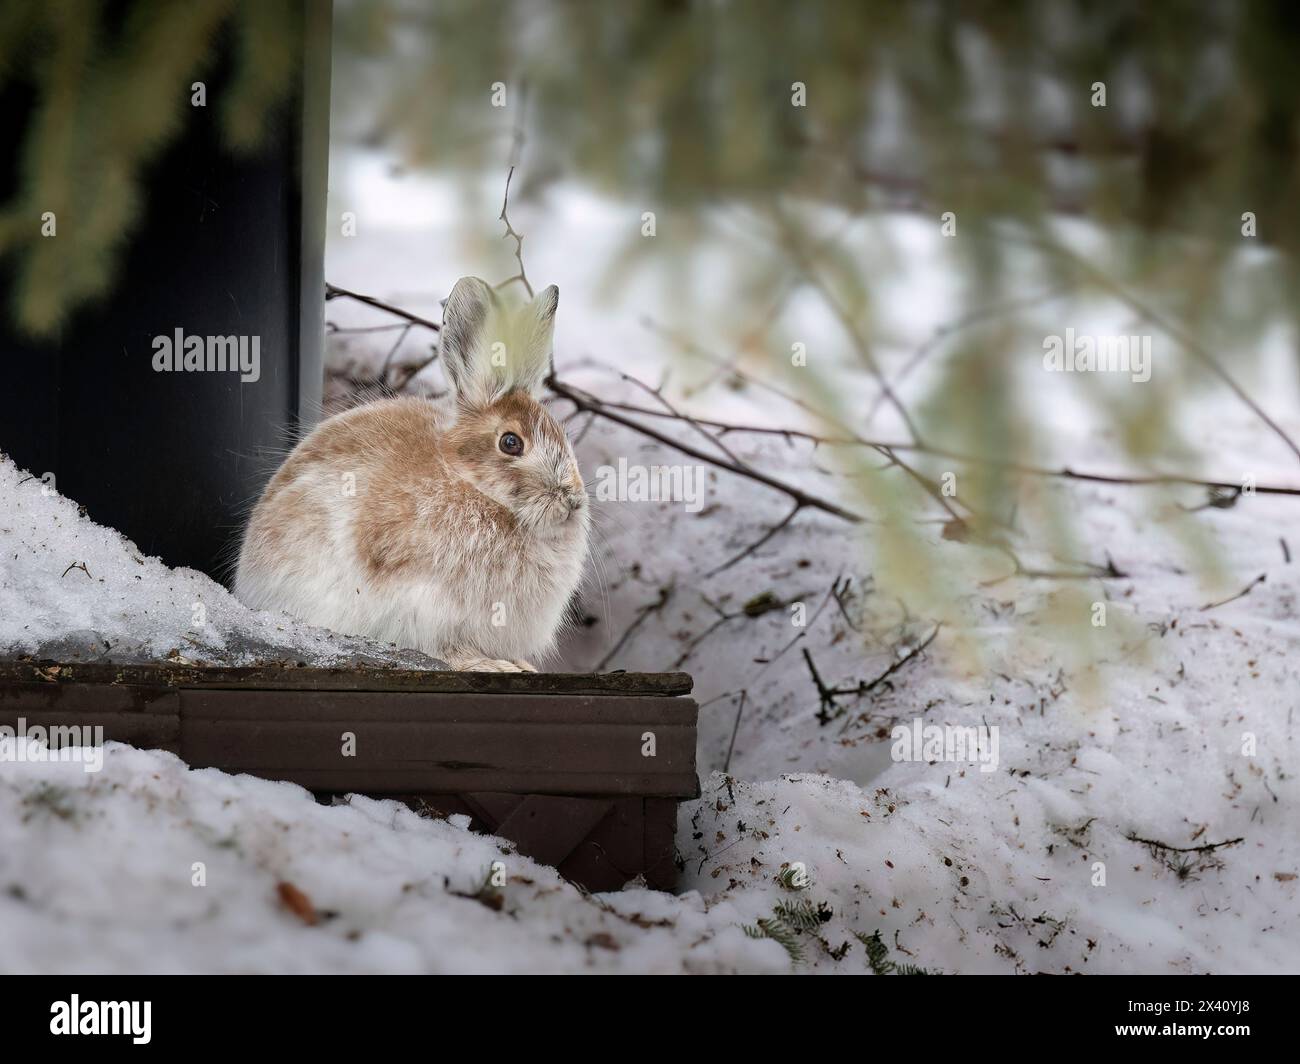 Par une douce journée d'avril dans le centre-sud de l'Alaska, un lièvre raquette (Lepus americanus), son pelage est en train de passer du blanc d'hiver au front d'été... Banque D'Images